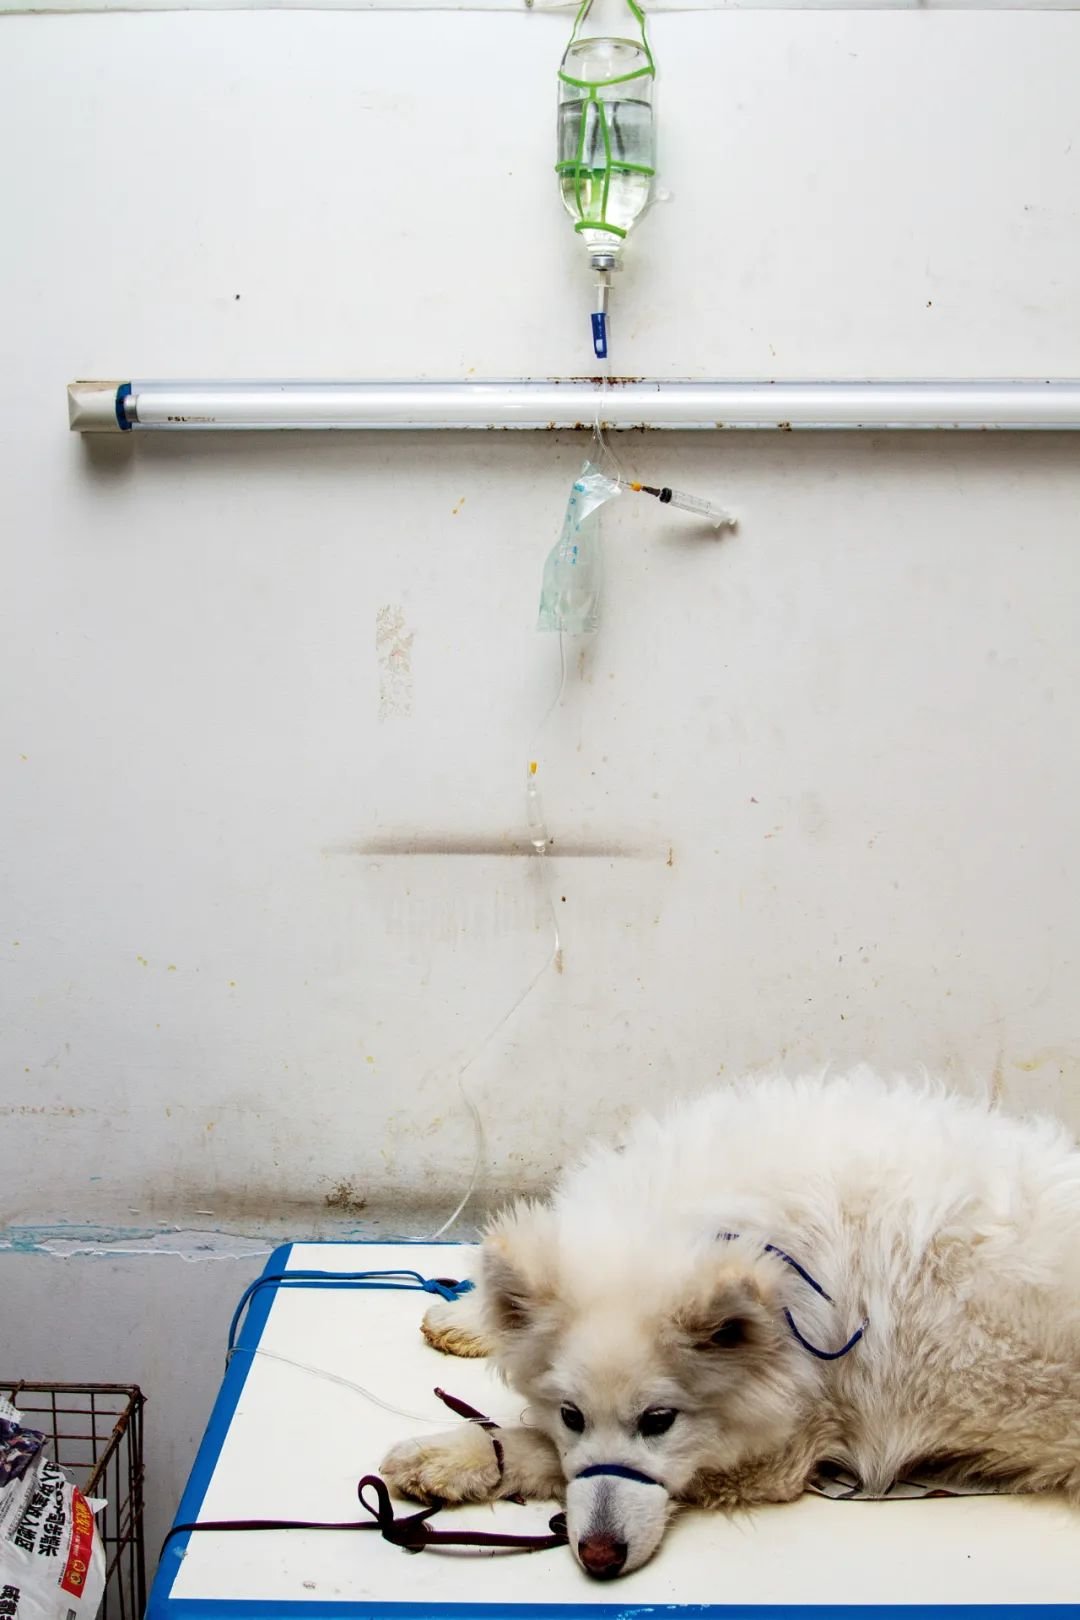 宠物医院内打吊瓶的狗。图/视觉中国